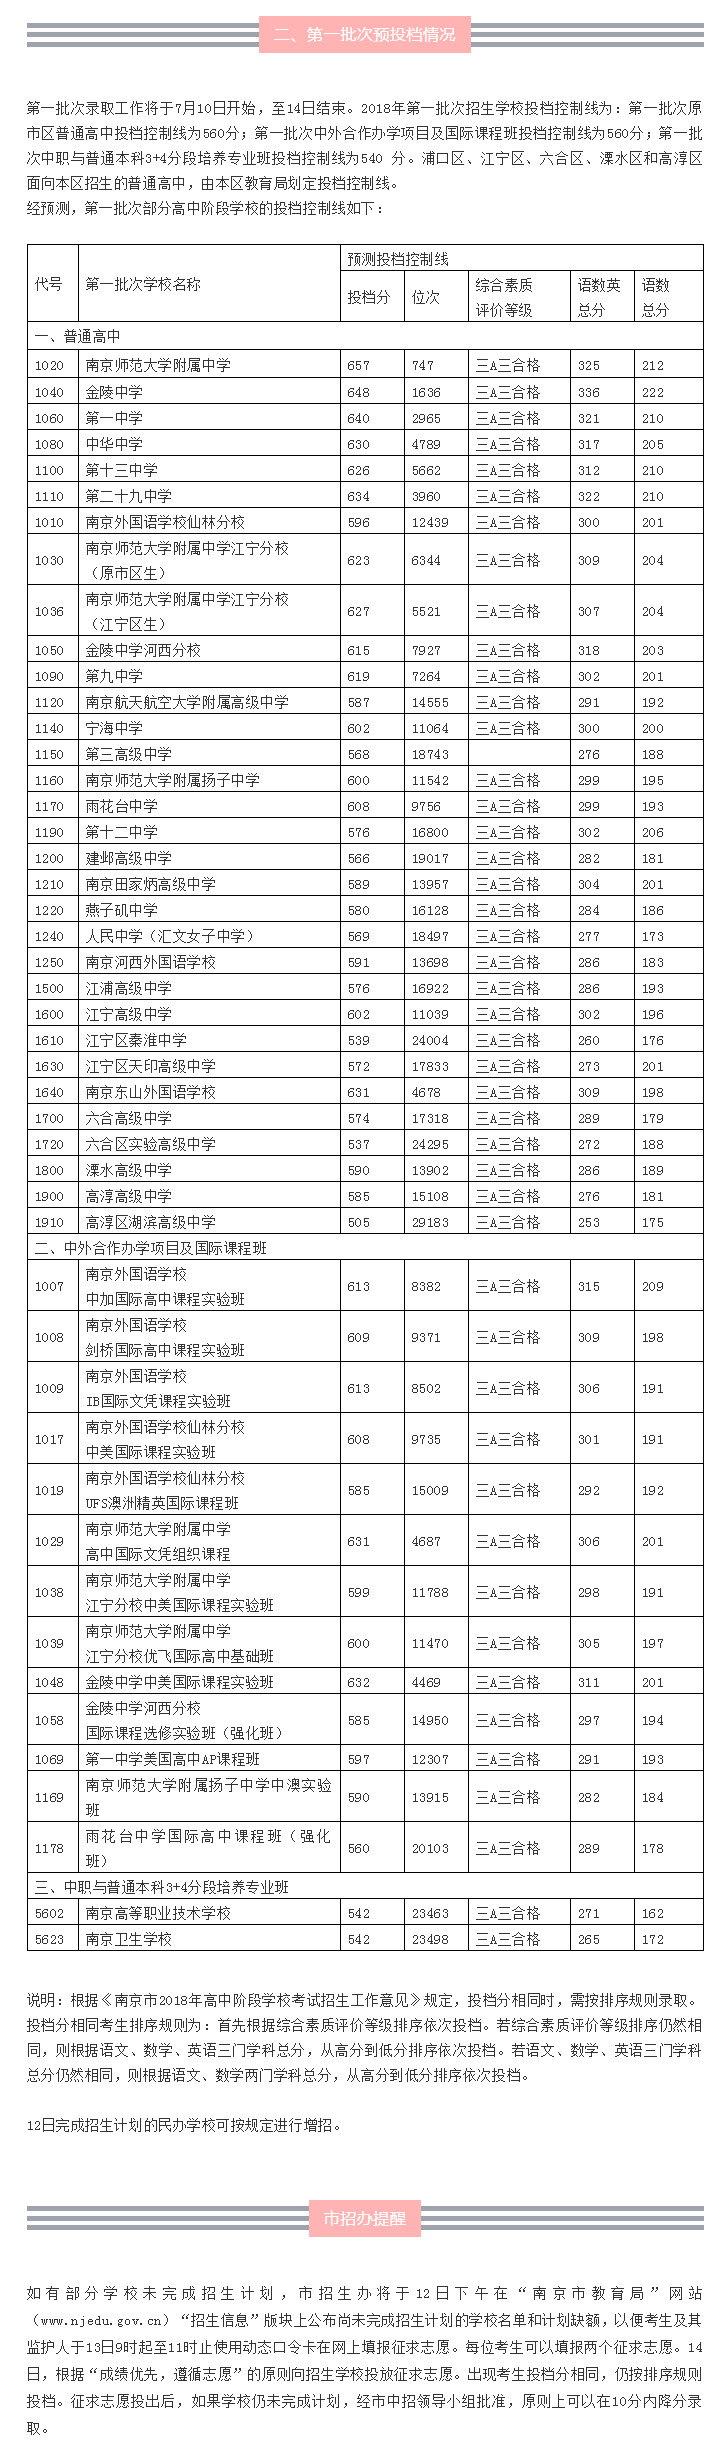 2017年南京中考人数